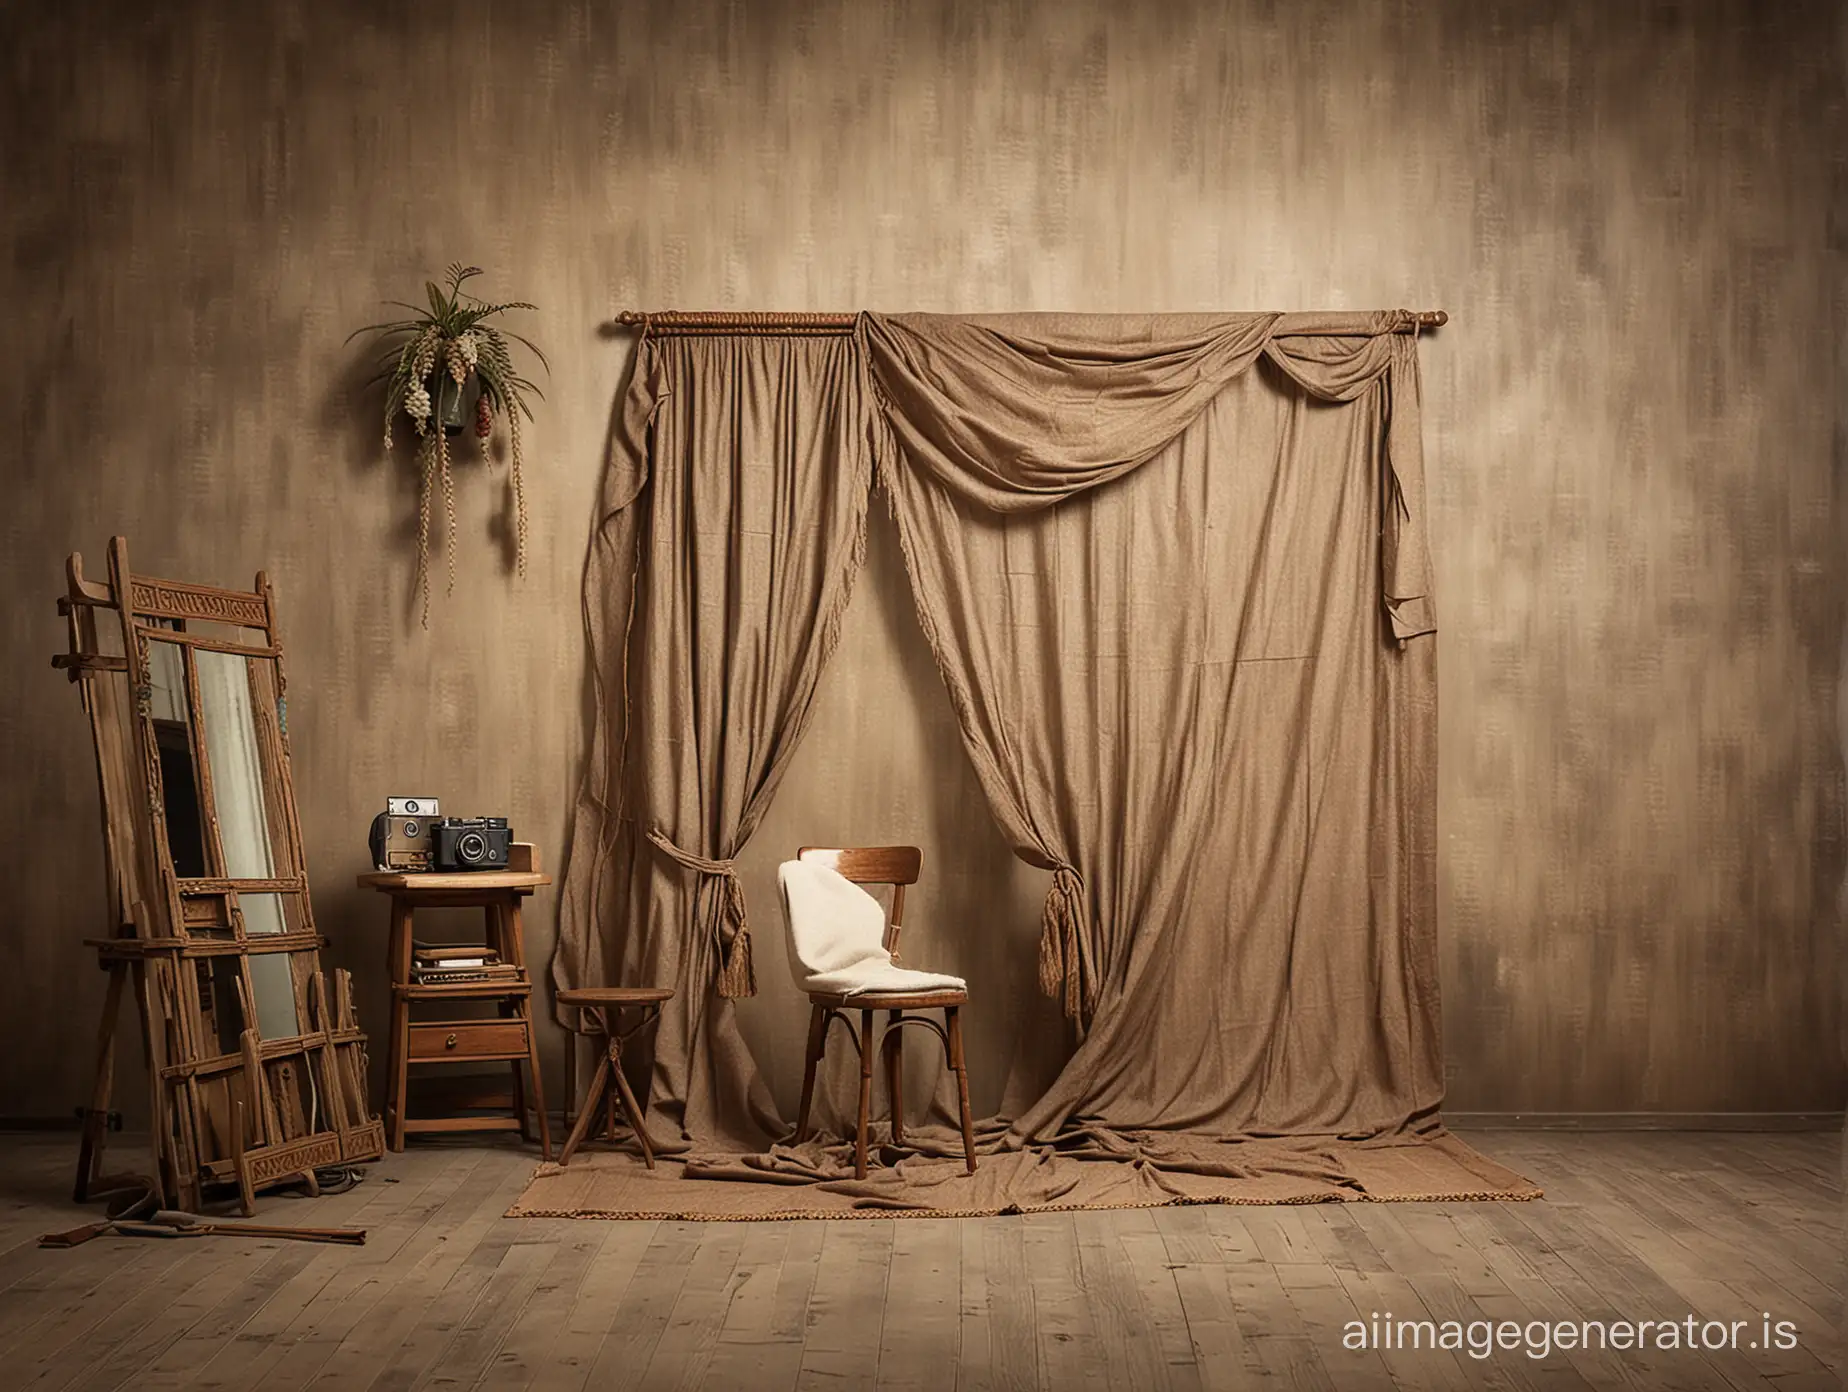 Kuwaitian-Retro-Theme-Photography-Studio-Backdrop-in-Long-Shot